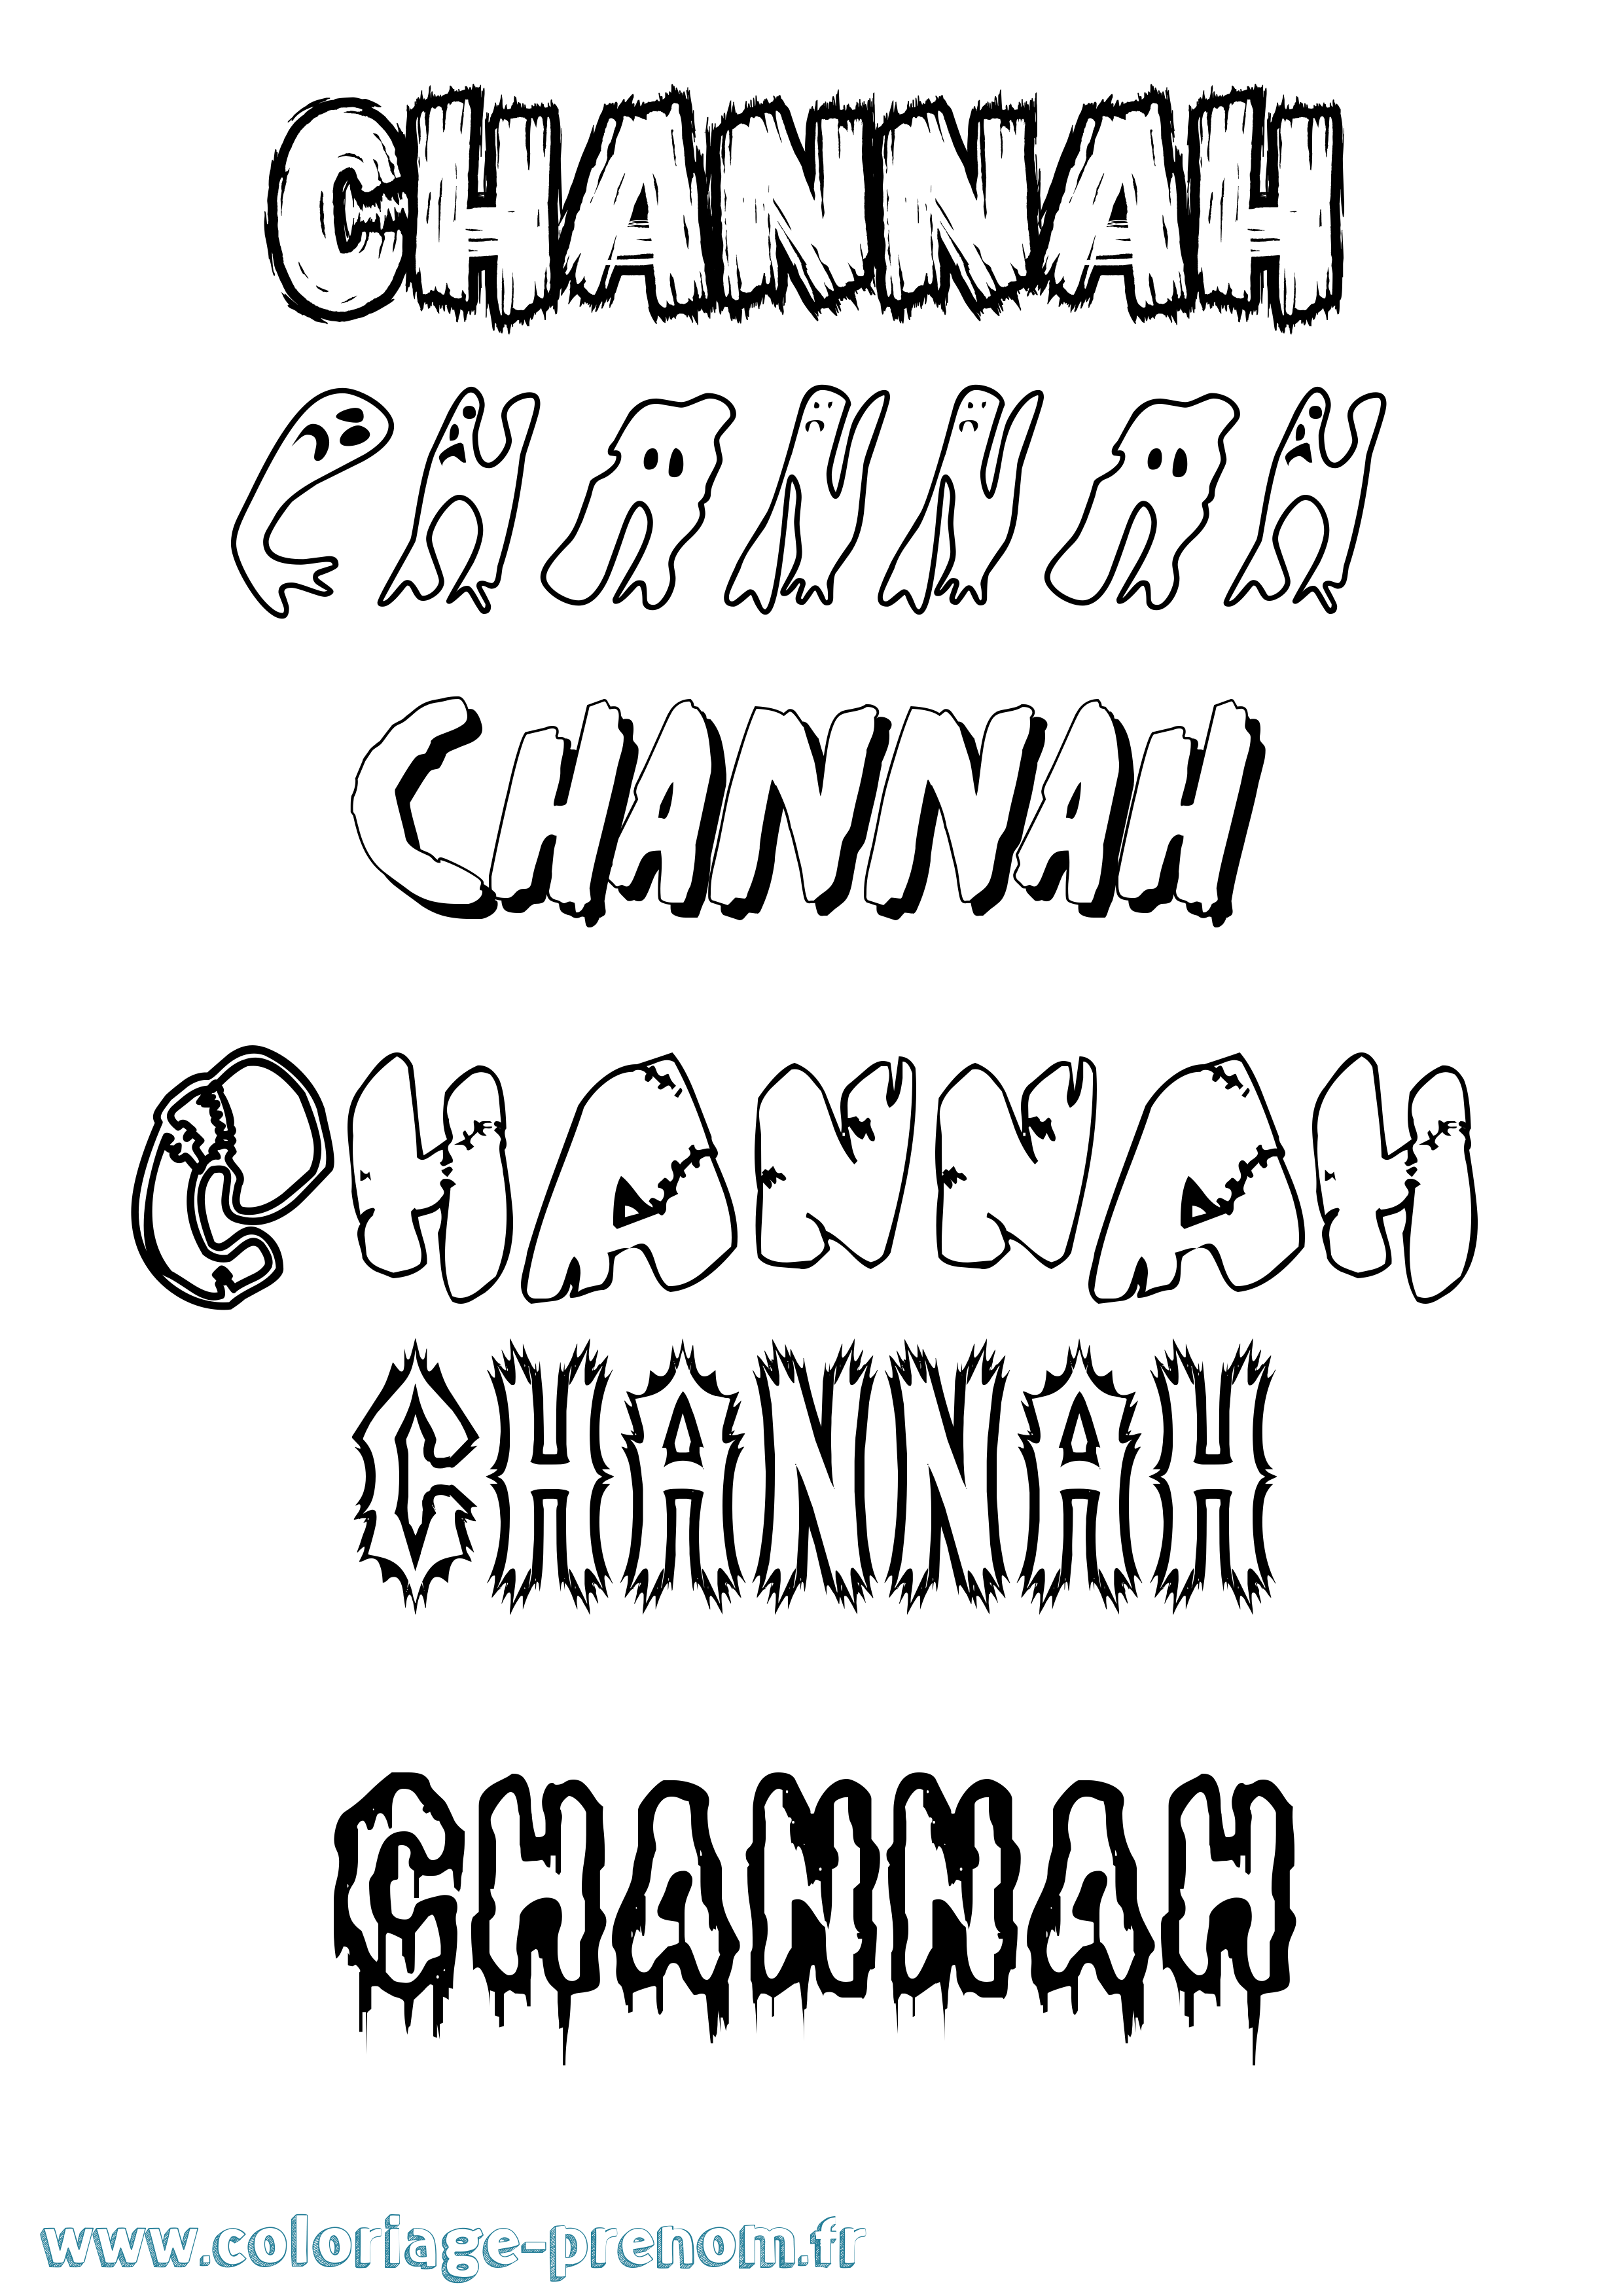 Coloriage prénom Channah Frisson